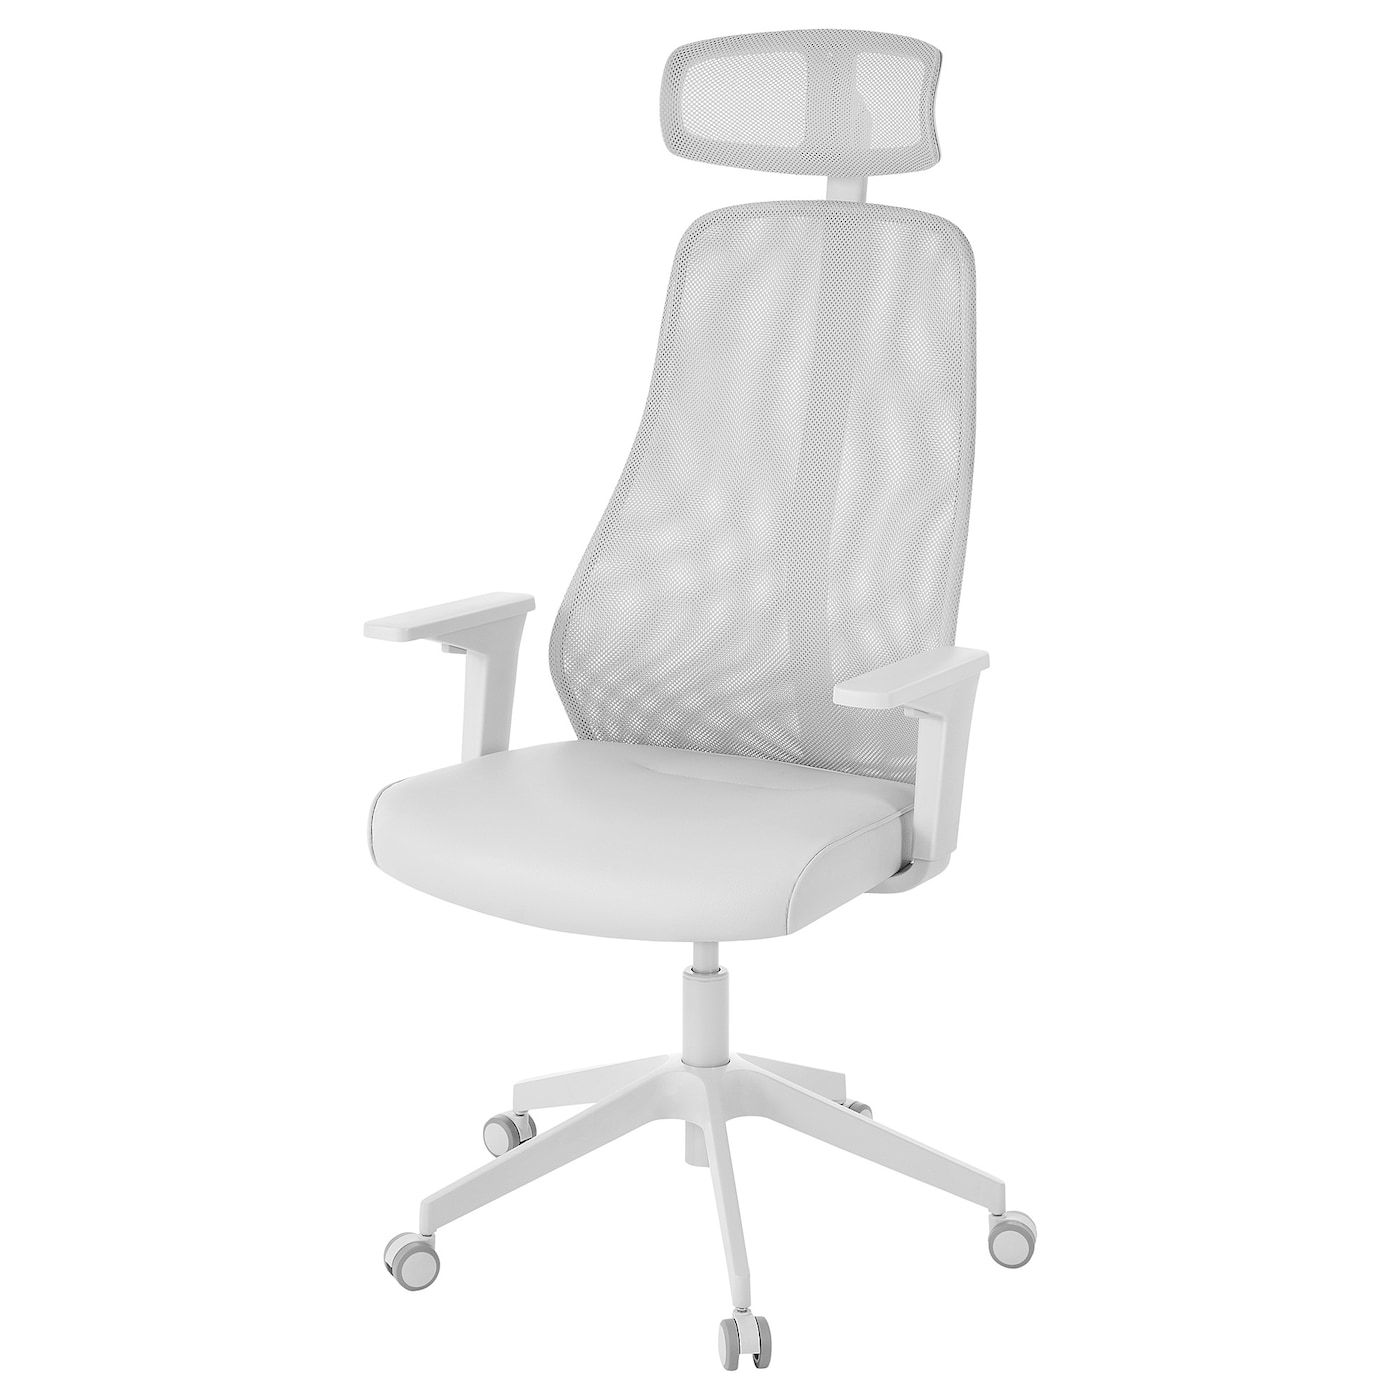 Игровой/офисный стул - IKEA MATCHSPEL/МАТЧСПЕЛ ИКЕА, 66х66 см, белый